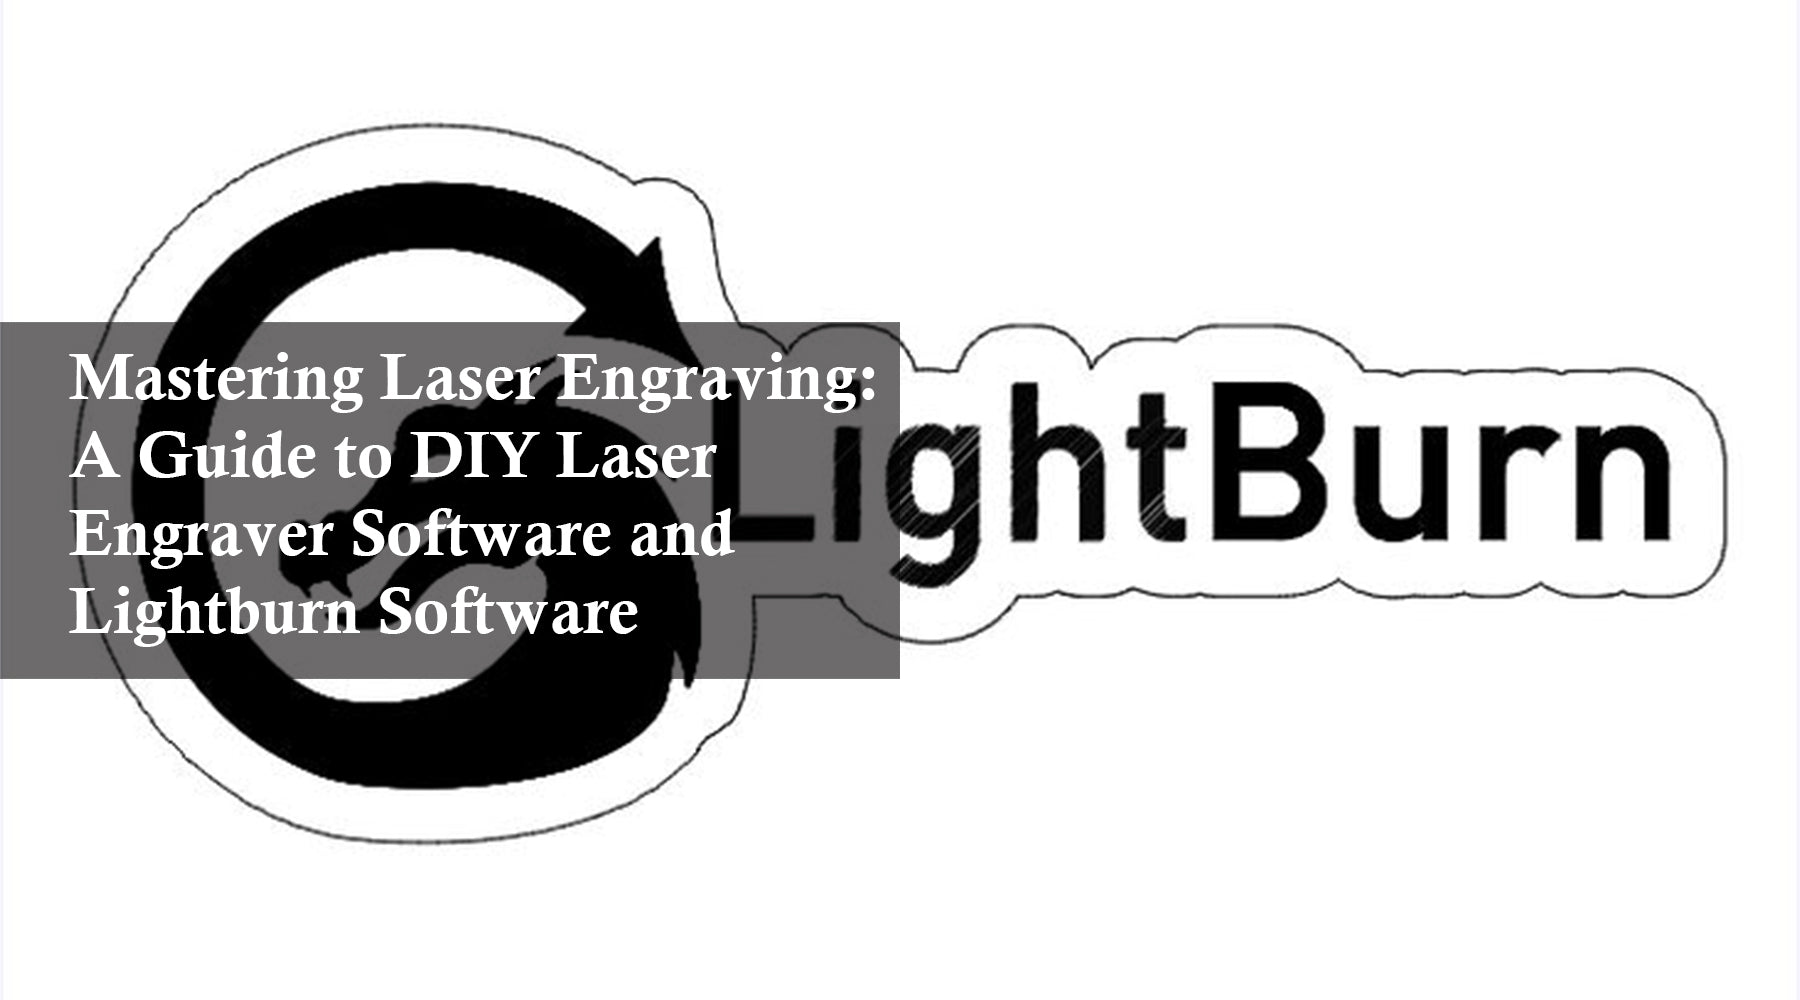 Mastering Laser Engraving: A Guide to DIY Laser Engraver Software and Lightburn Software